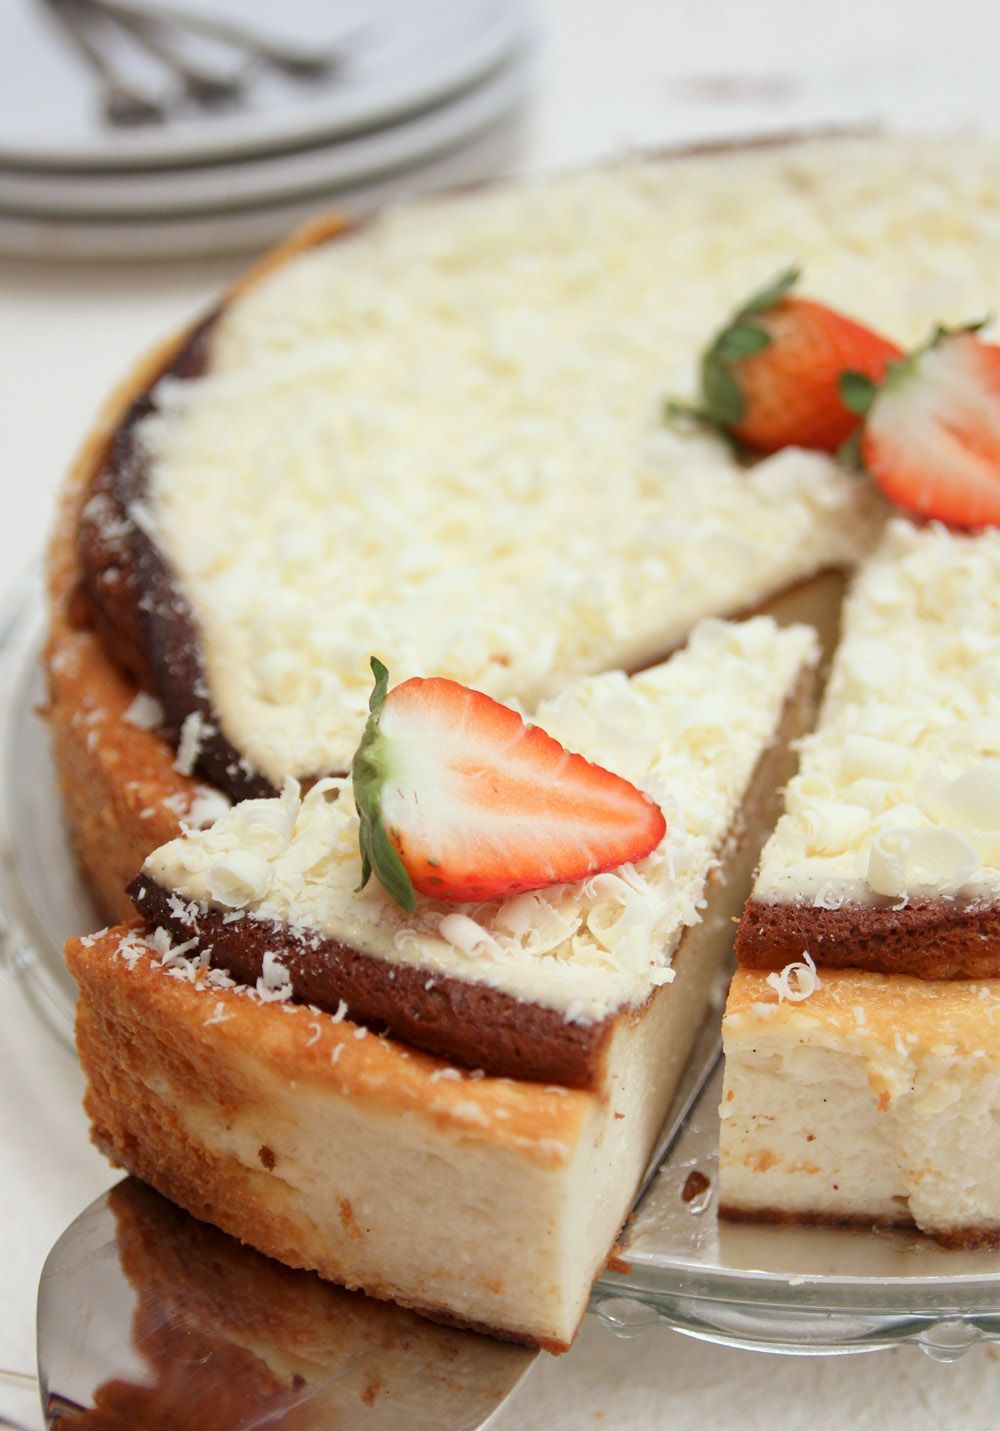 עוגת גבינה אפויה עם שוקולד לבן | צילום: נטלי לוין